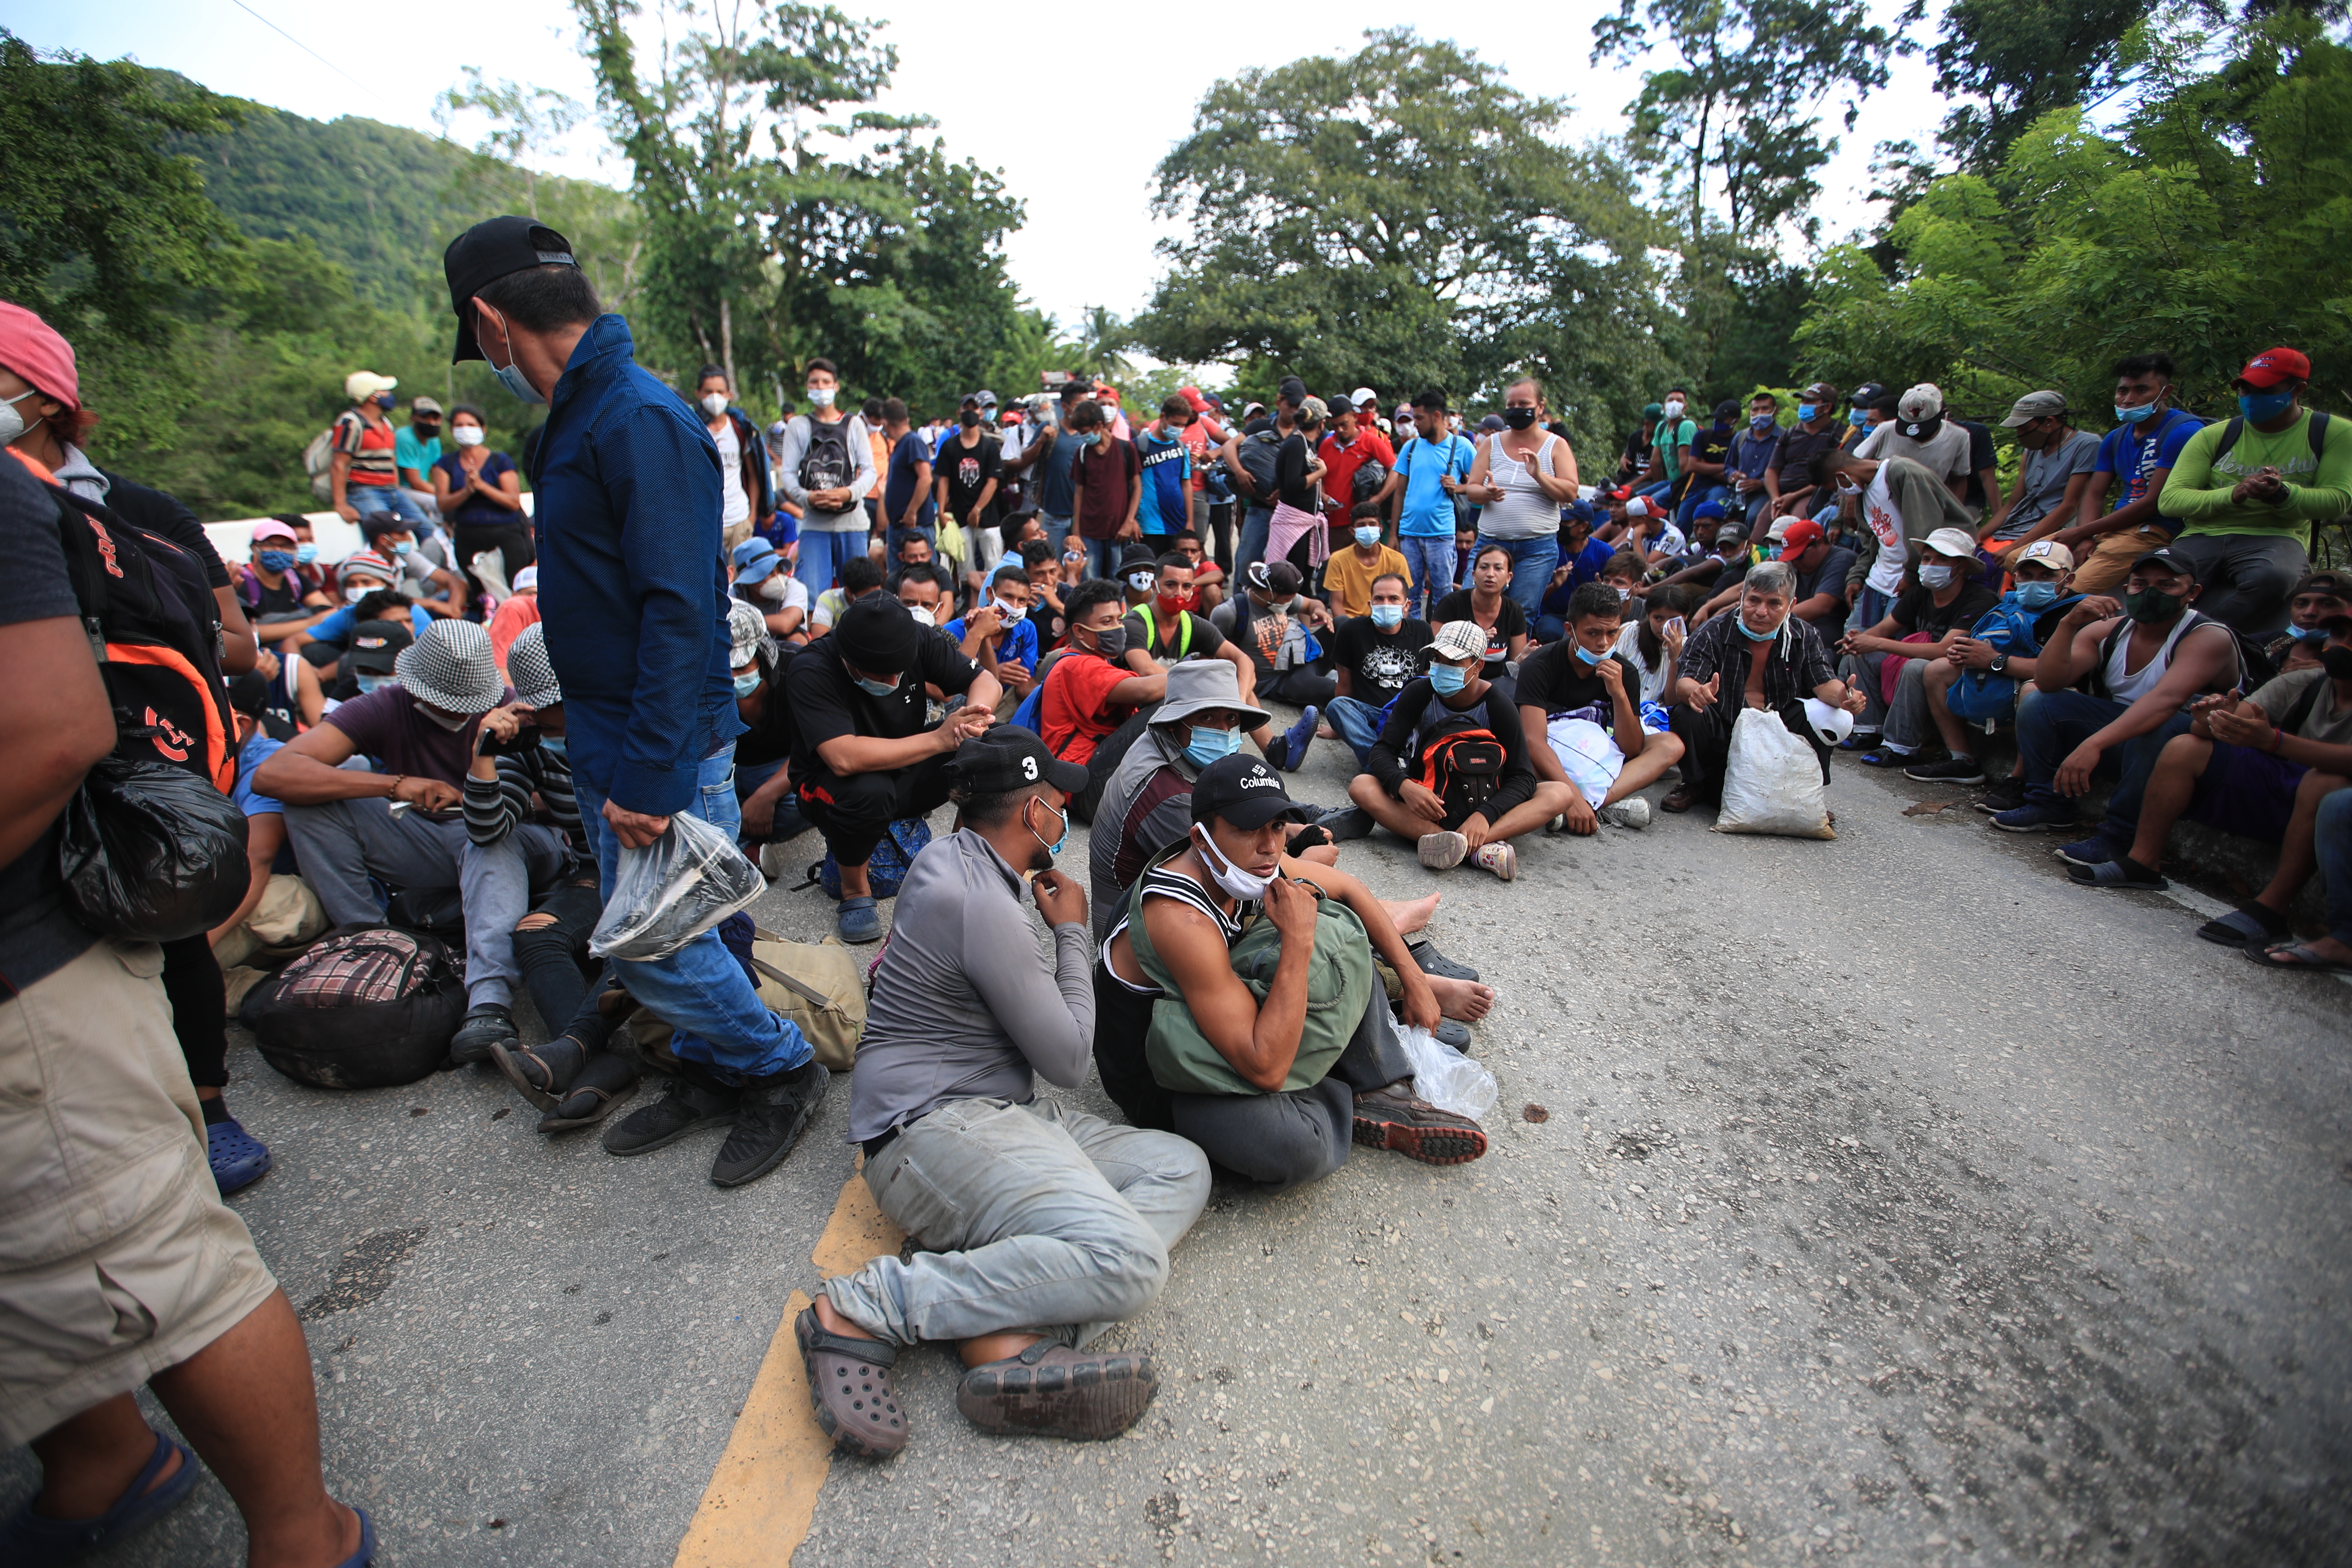 En septiembre se activó una caravana de migrantes desde Honduras y fue disuelta en Guatemala por las autoridades. (Foto Prensa Libre: Hemeroteca) 